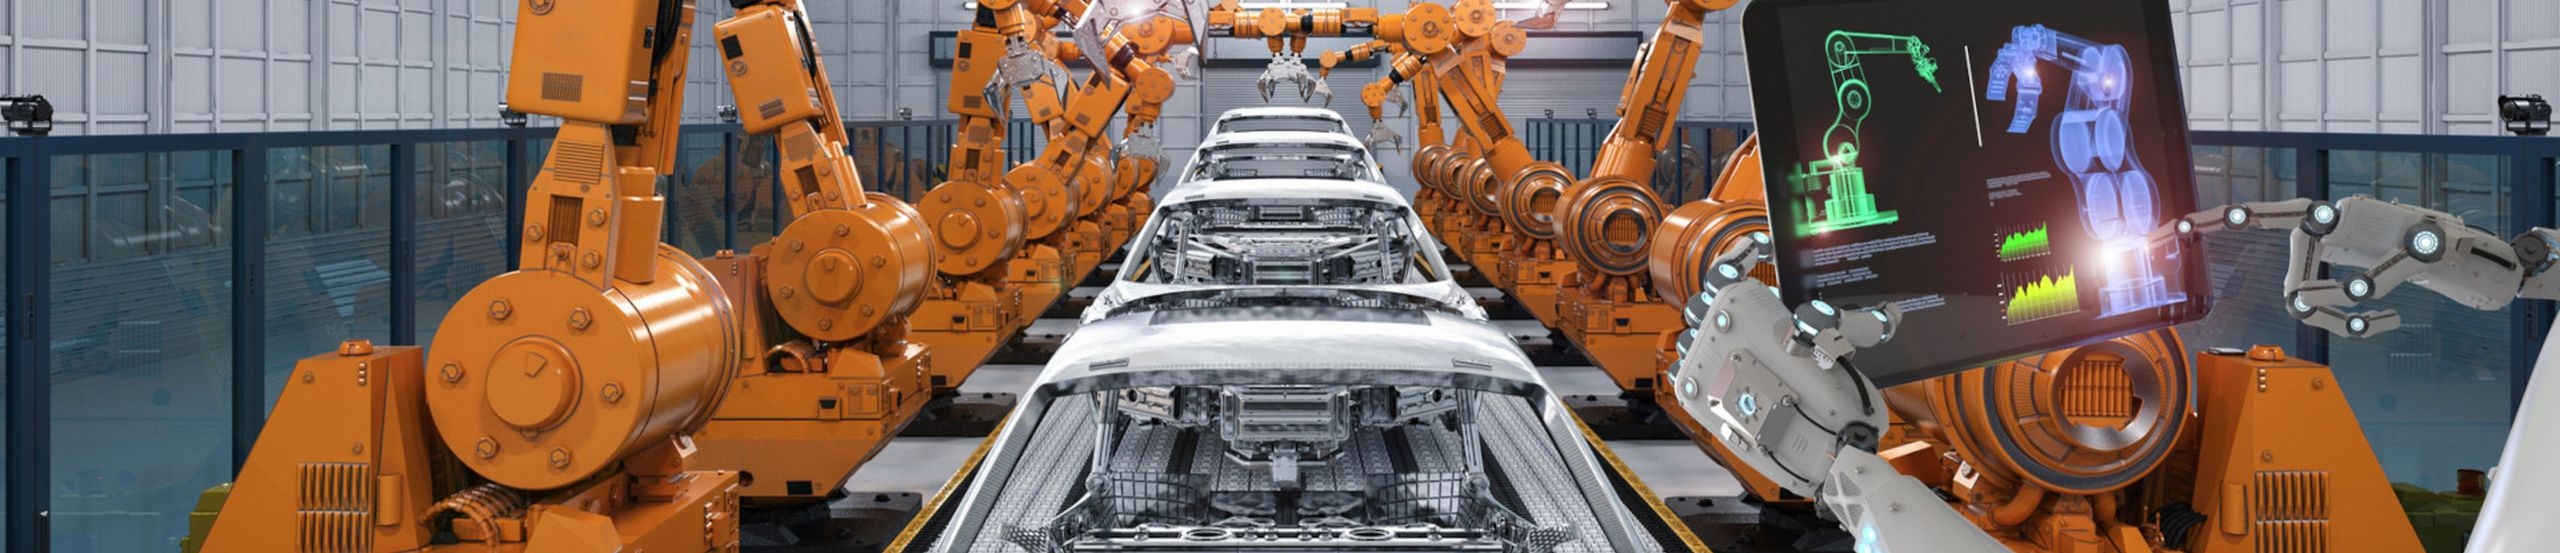 Die automatisierte Produktion von Autos durch Roboter